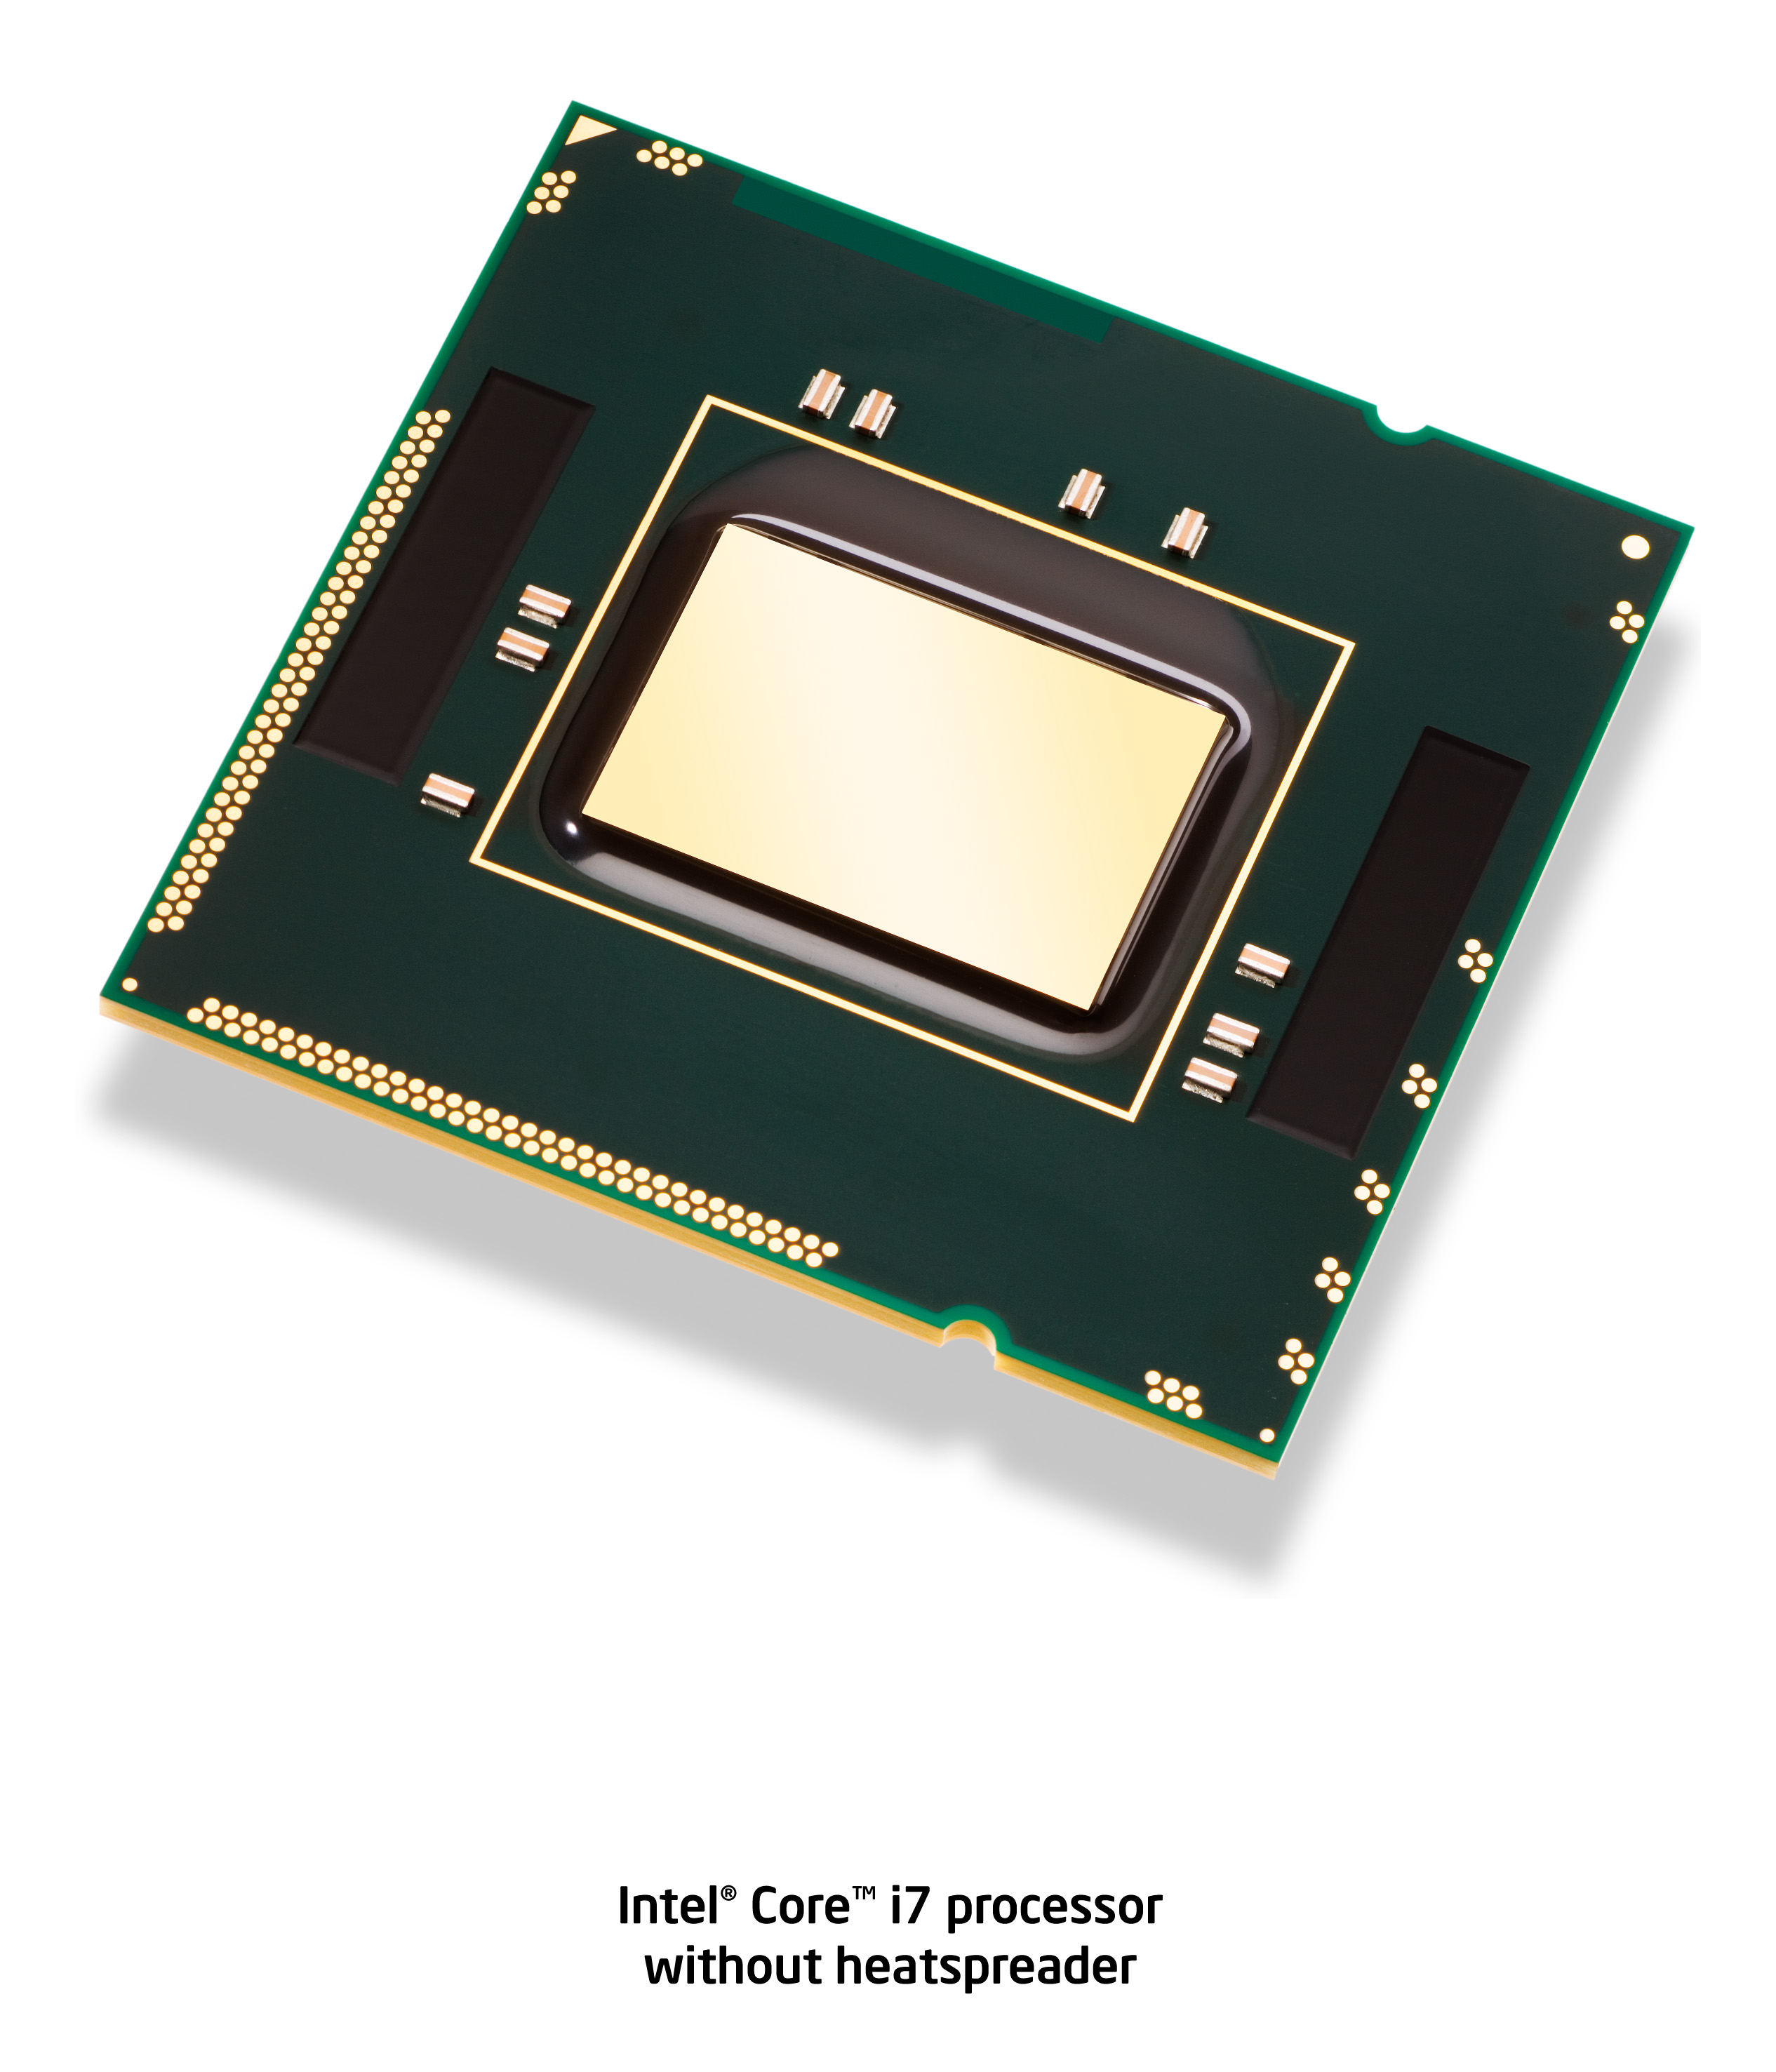 Immagine pubblicata in relazione al seguente contenuto: Intel lancia Core i7, il processore per desktop pi veloce al mondo | Nome immagine: news9033_3.jpg